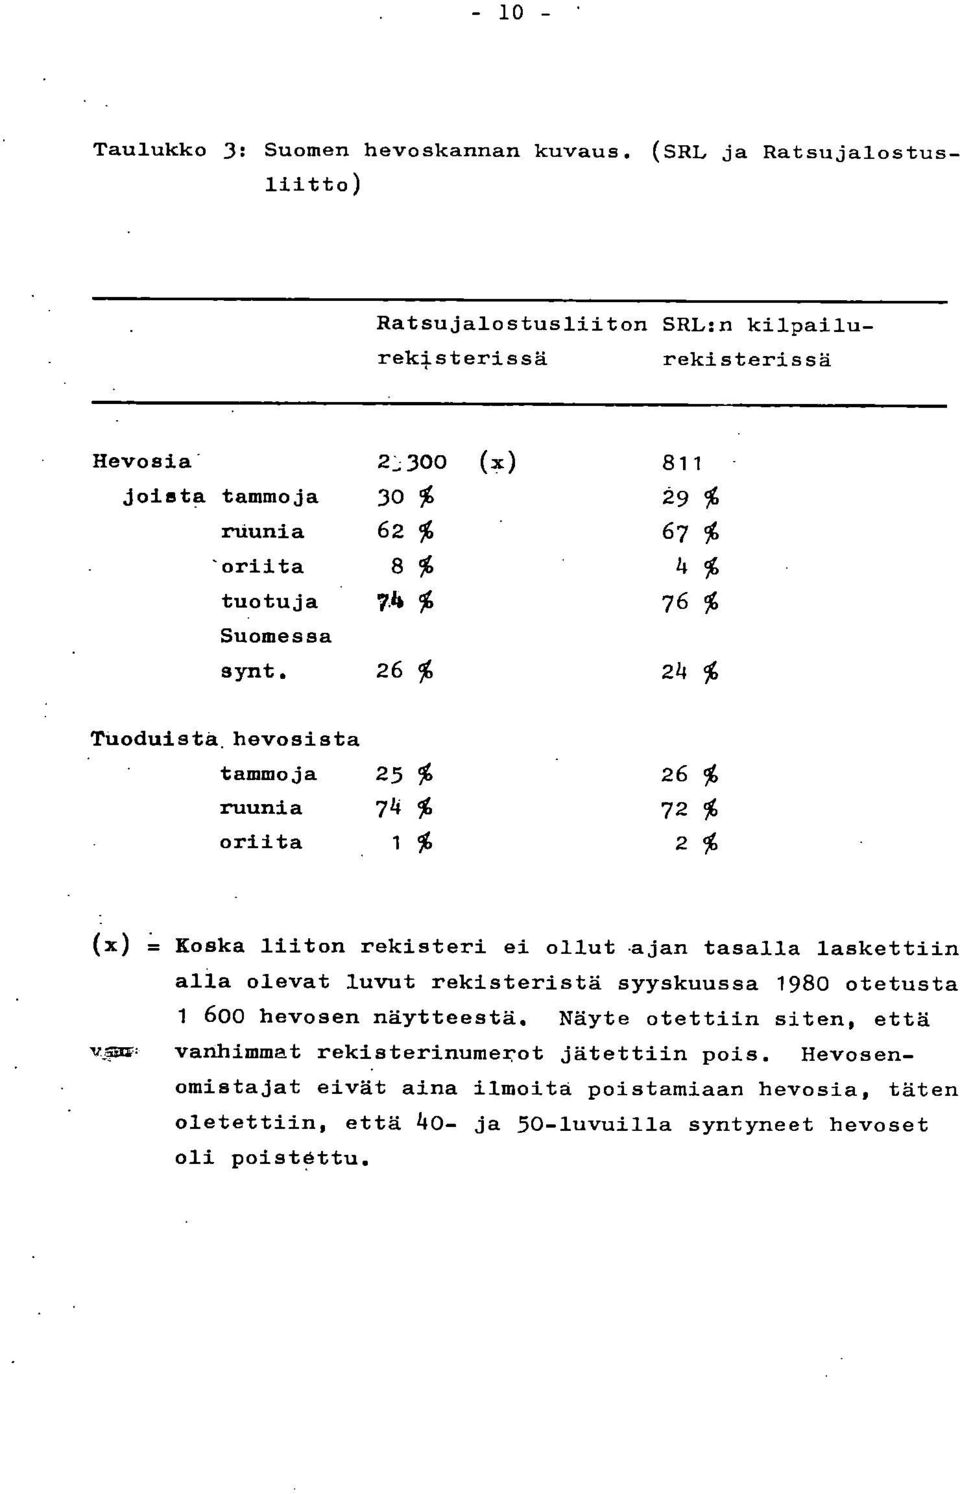 tuotuja 7.lb % 76 % Suomessa synt. 26 % 24 % Tuoduista hevosista tammoja 25 % 26 % ruunia 74 % 72 % oriita 1% 2% (x) = Koska liiton rekisteri ei ollut.